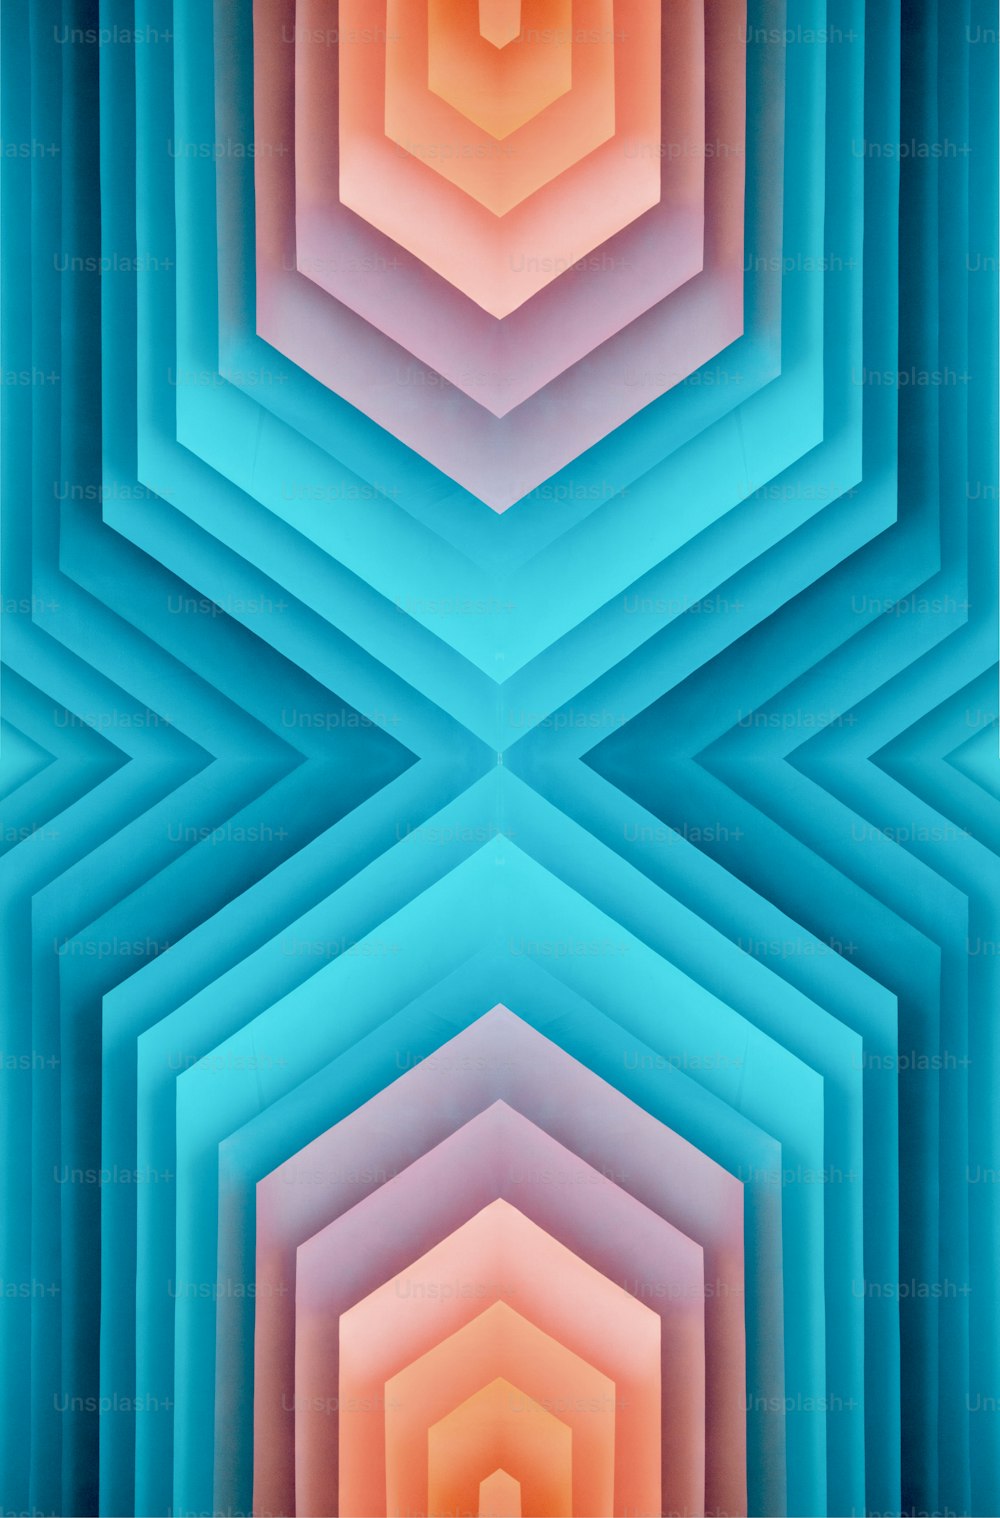 Une image abstraite d’une structure hexagonale